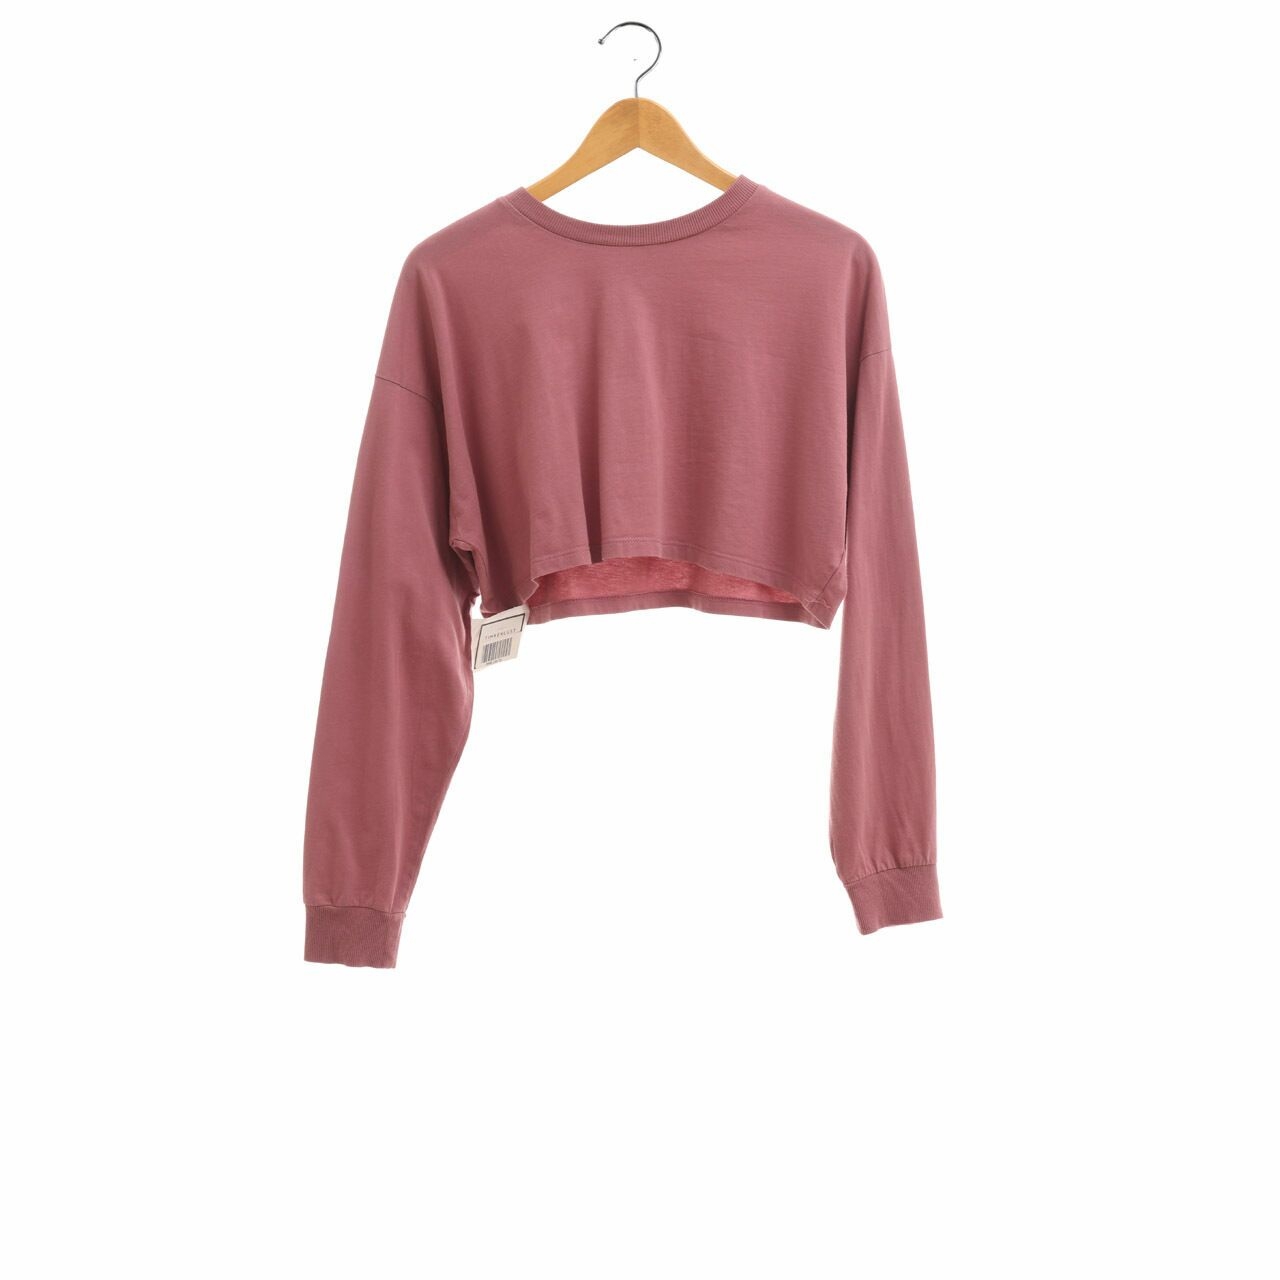 Asos Pink Rose Cropped Sweater